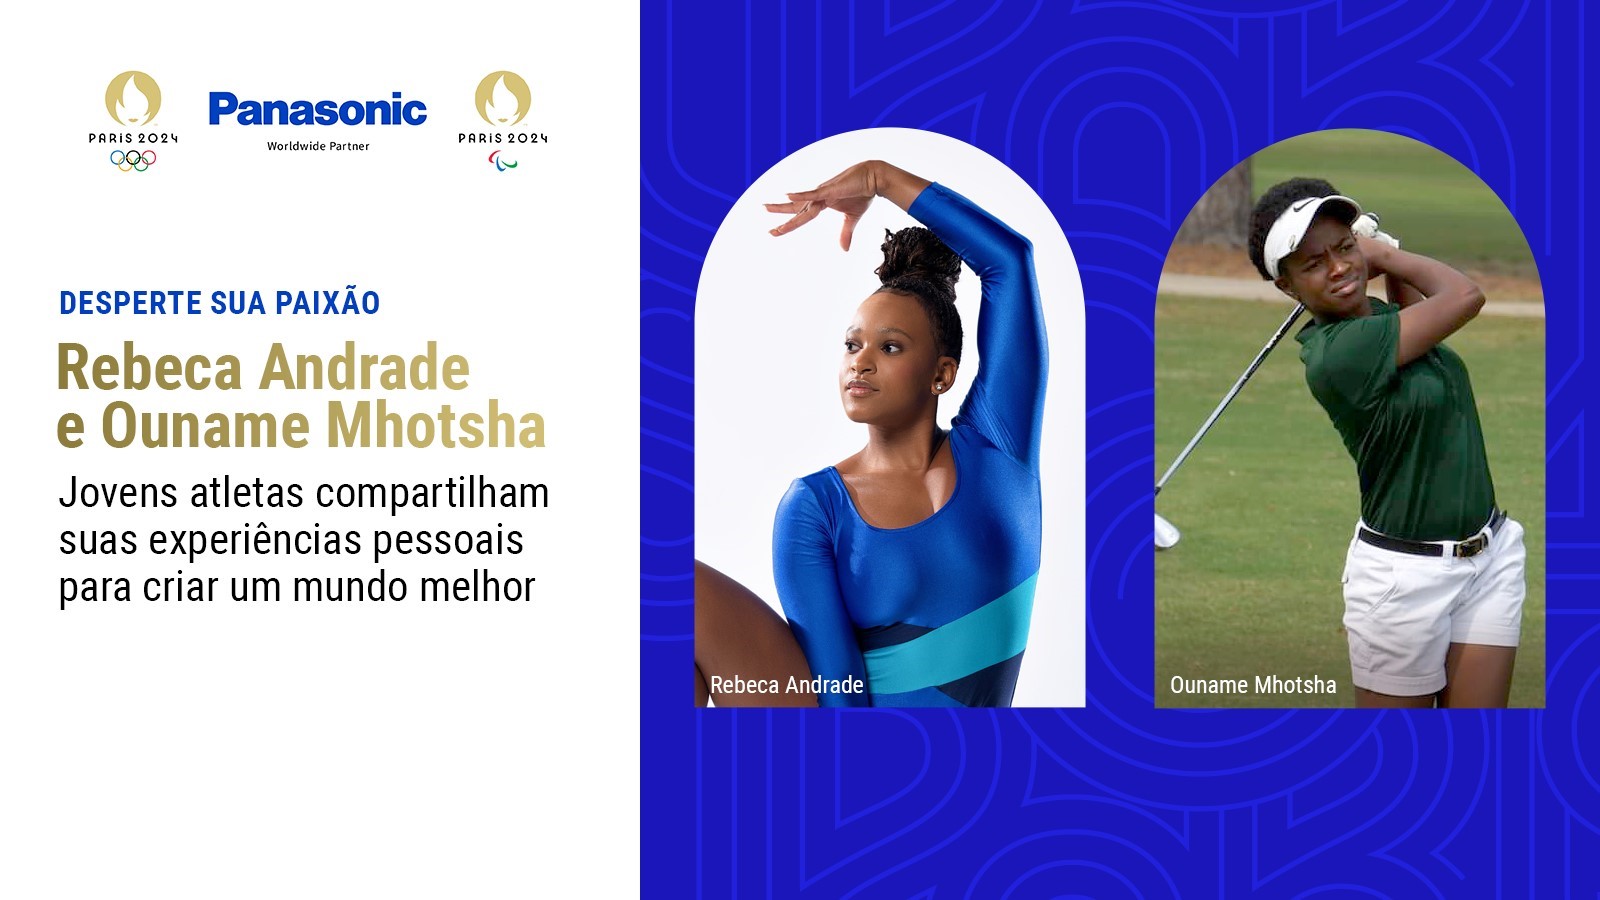 Acender a Paixão: Rebeca Andrade e Ouname Mhotsha Jovens atletas se valem de experiências pessoais para criar um mundo melhor